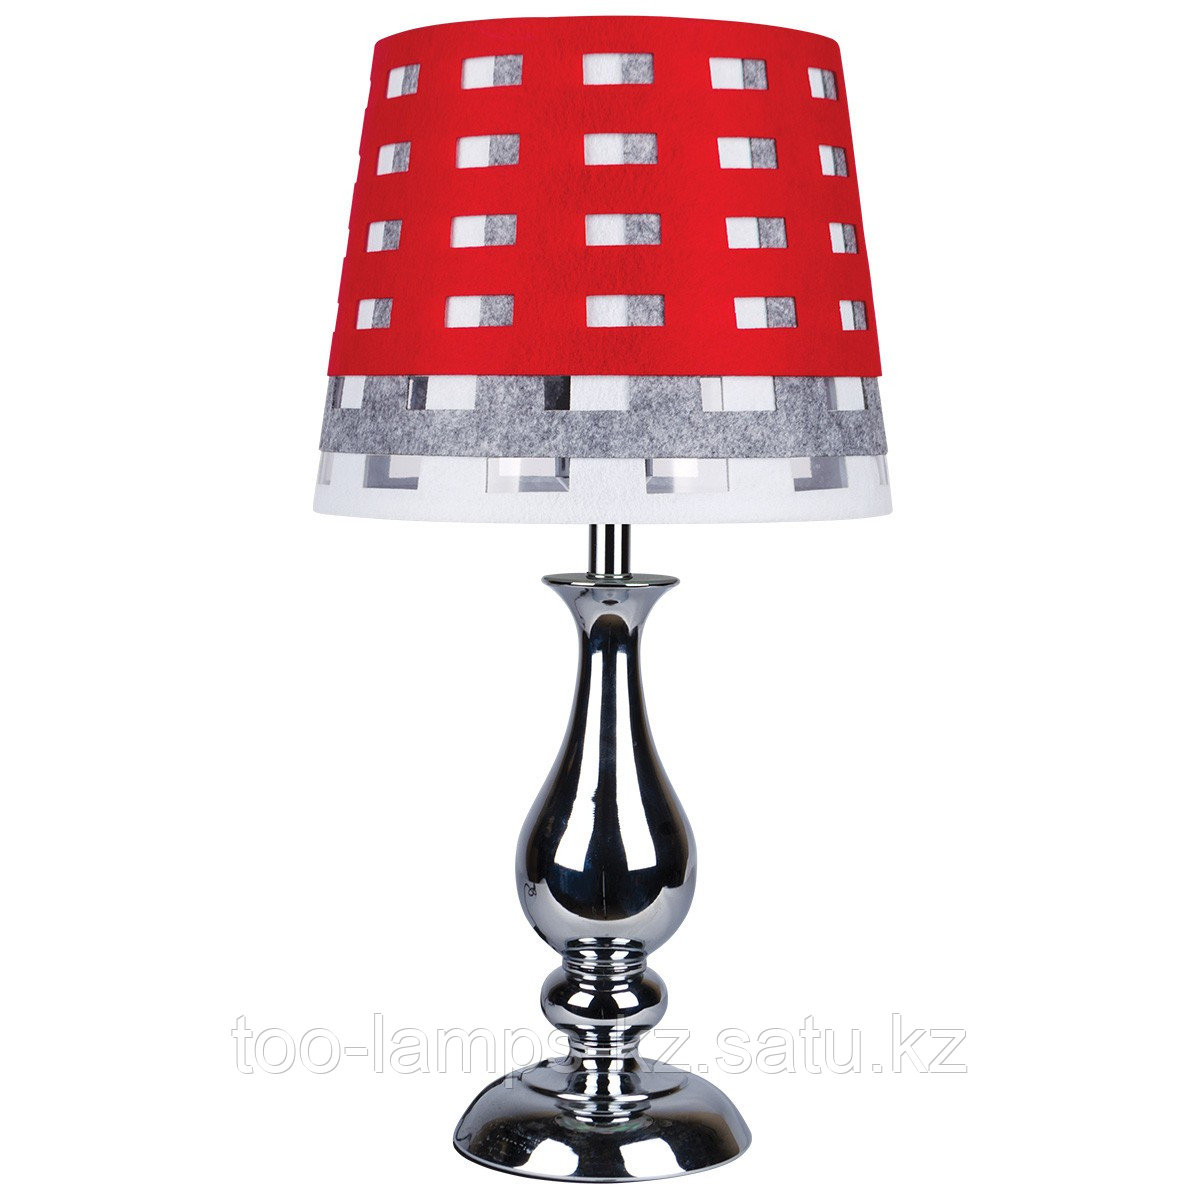 Настольная лампа T0011 Red